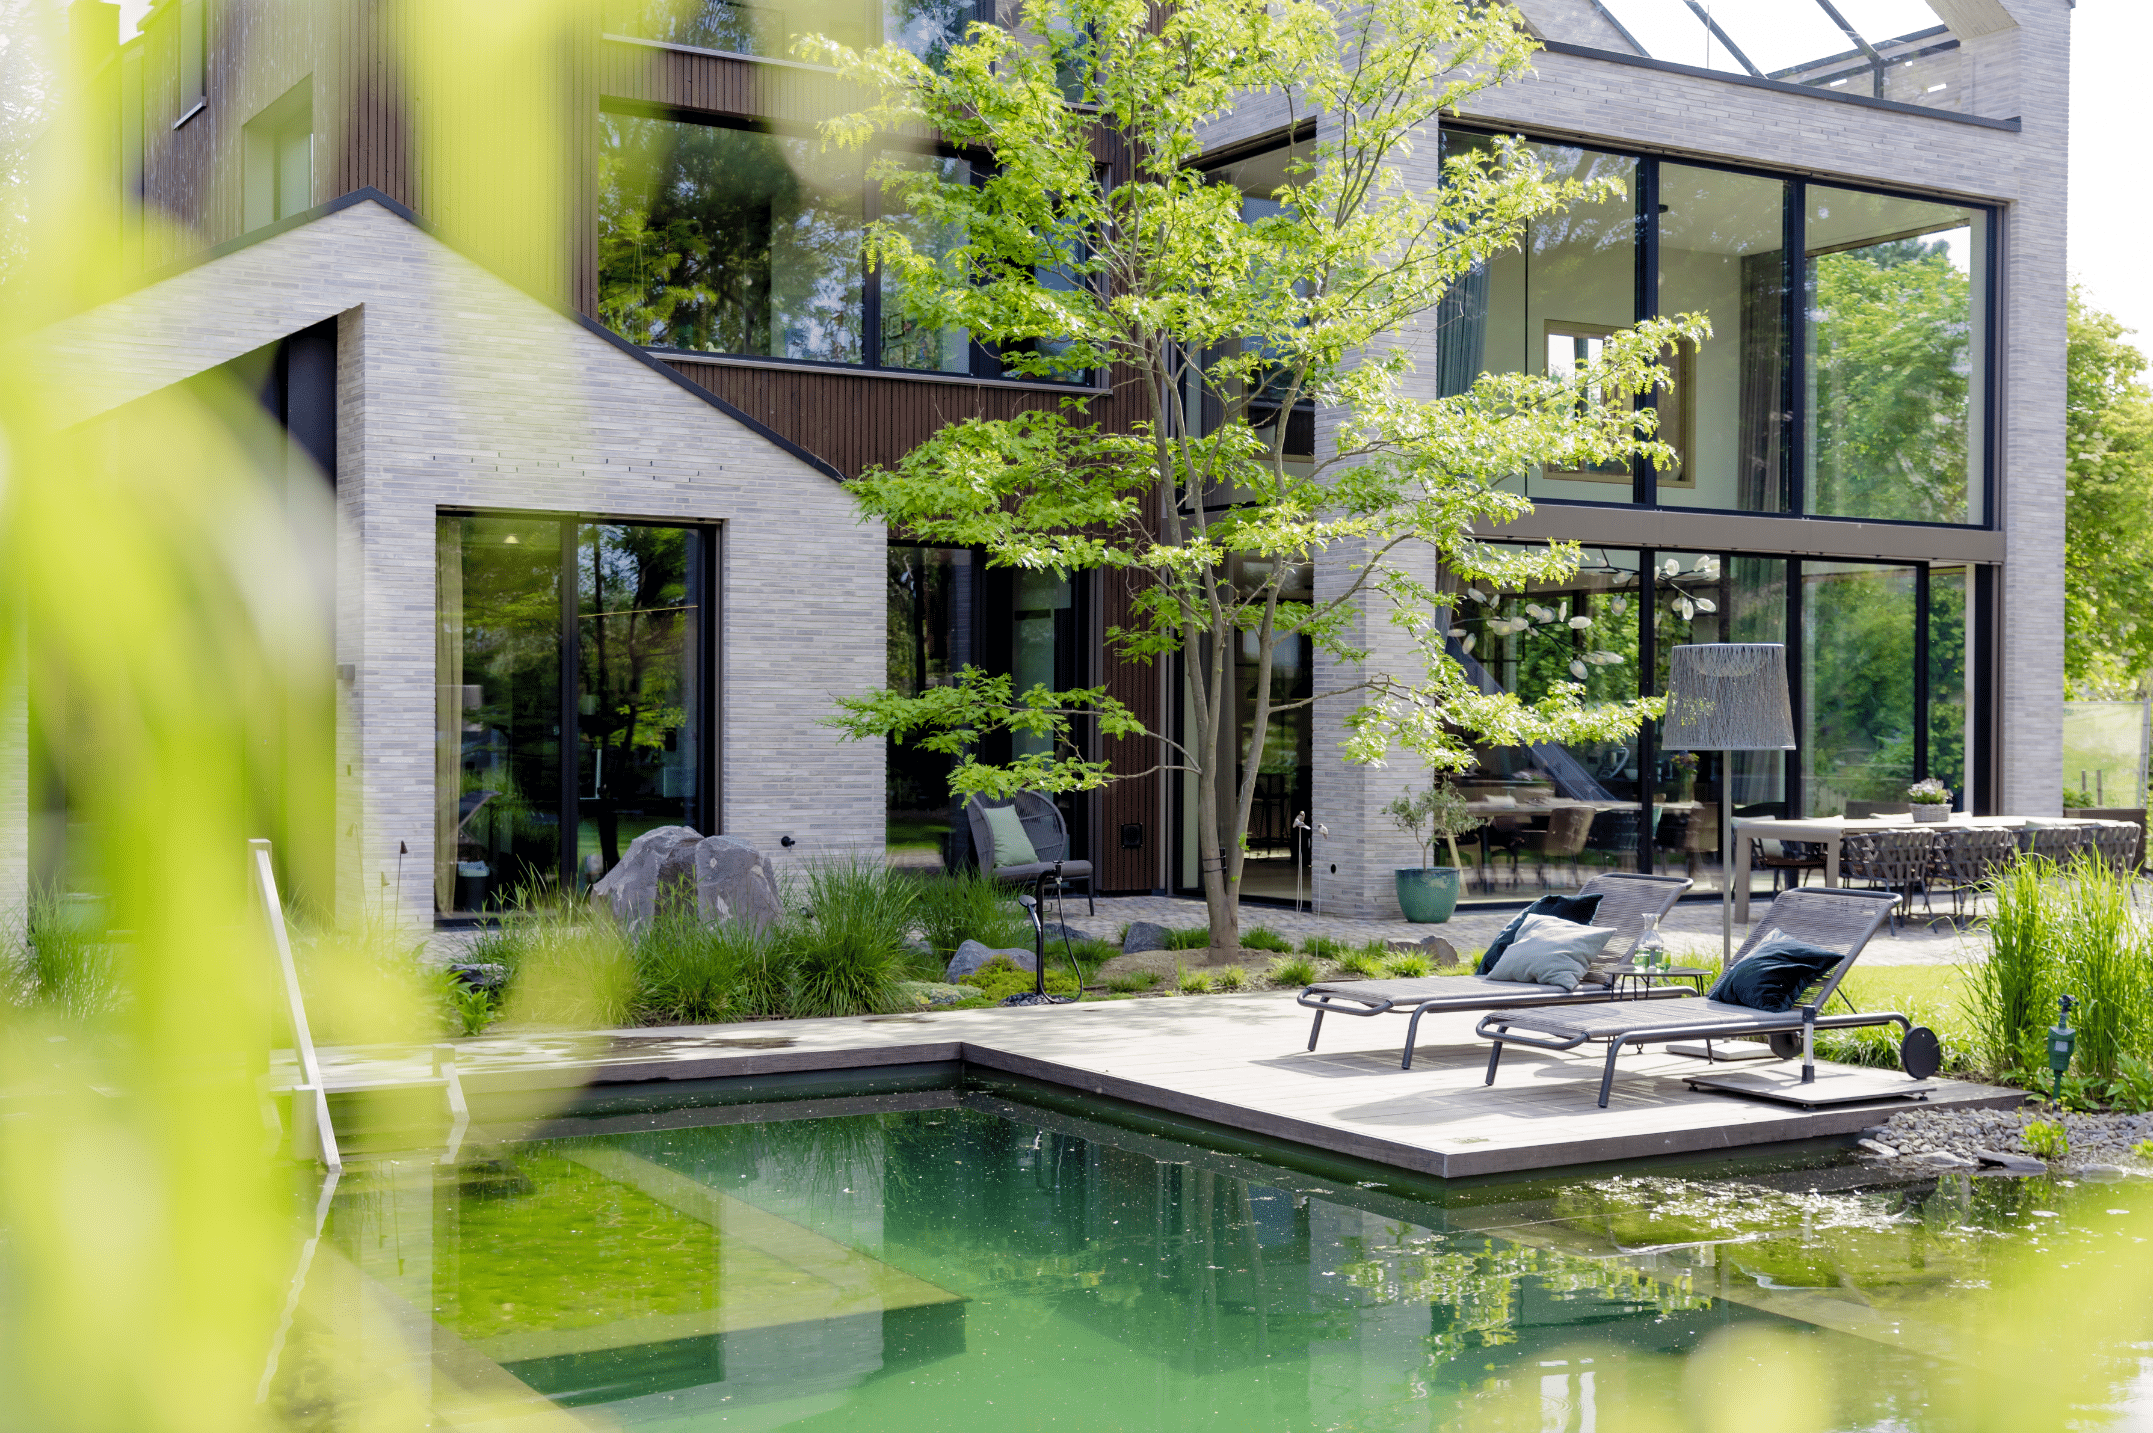 Josko zeigt ein modernes Haus mit vielen Fenstern und großen Glasfronten und einem Garten mit natürlichem Pool, vielen Pflanzen und einem Sonnendeck mit Liegen daneben.